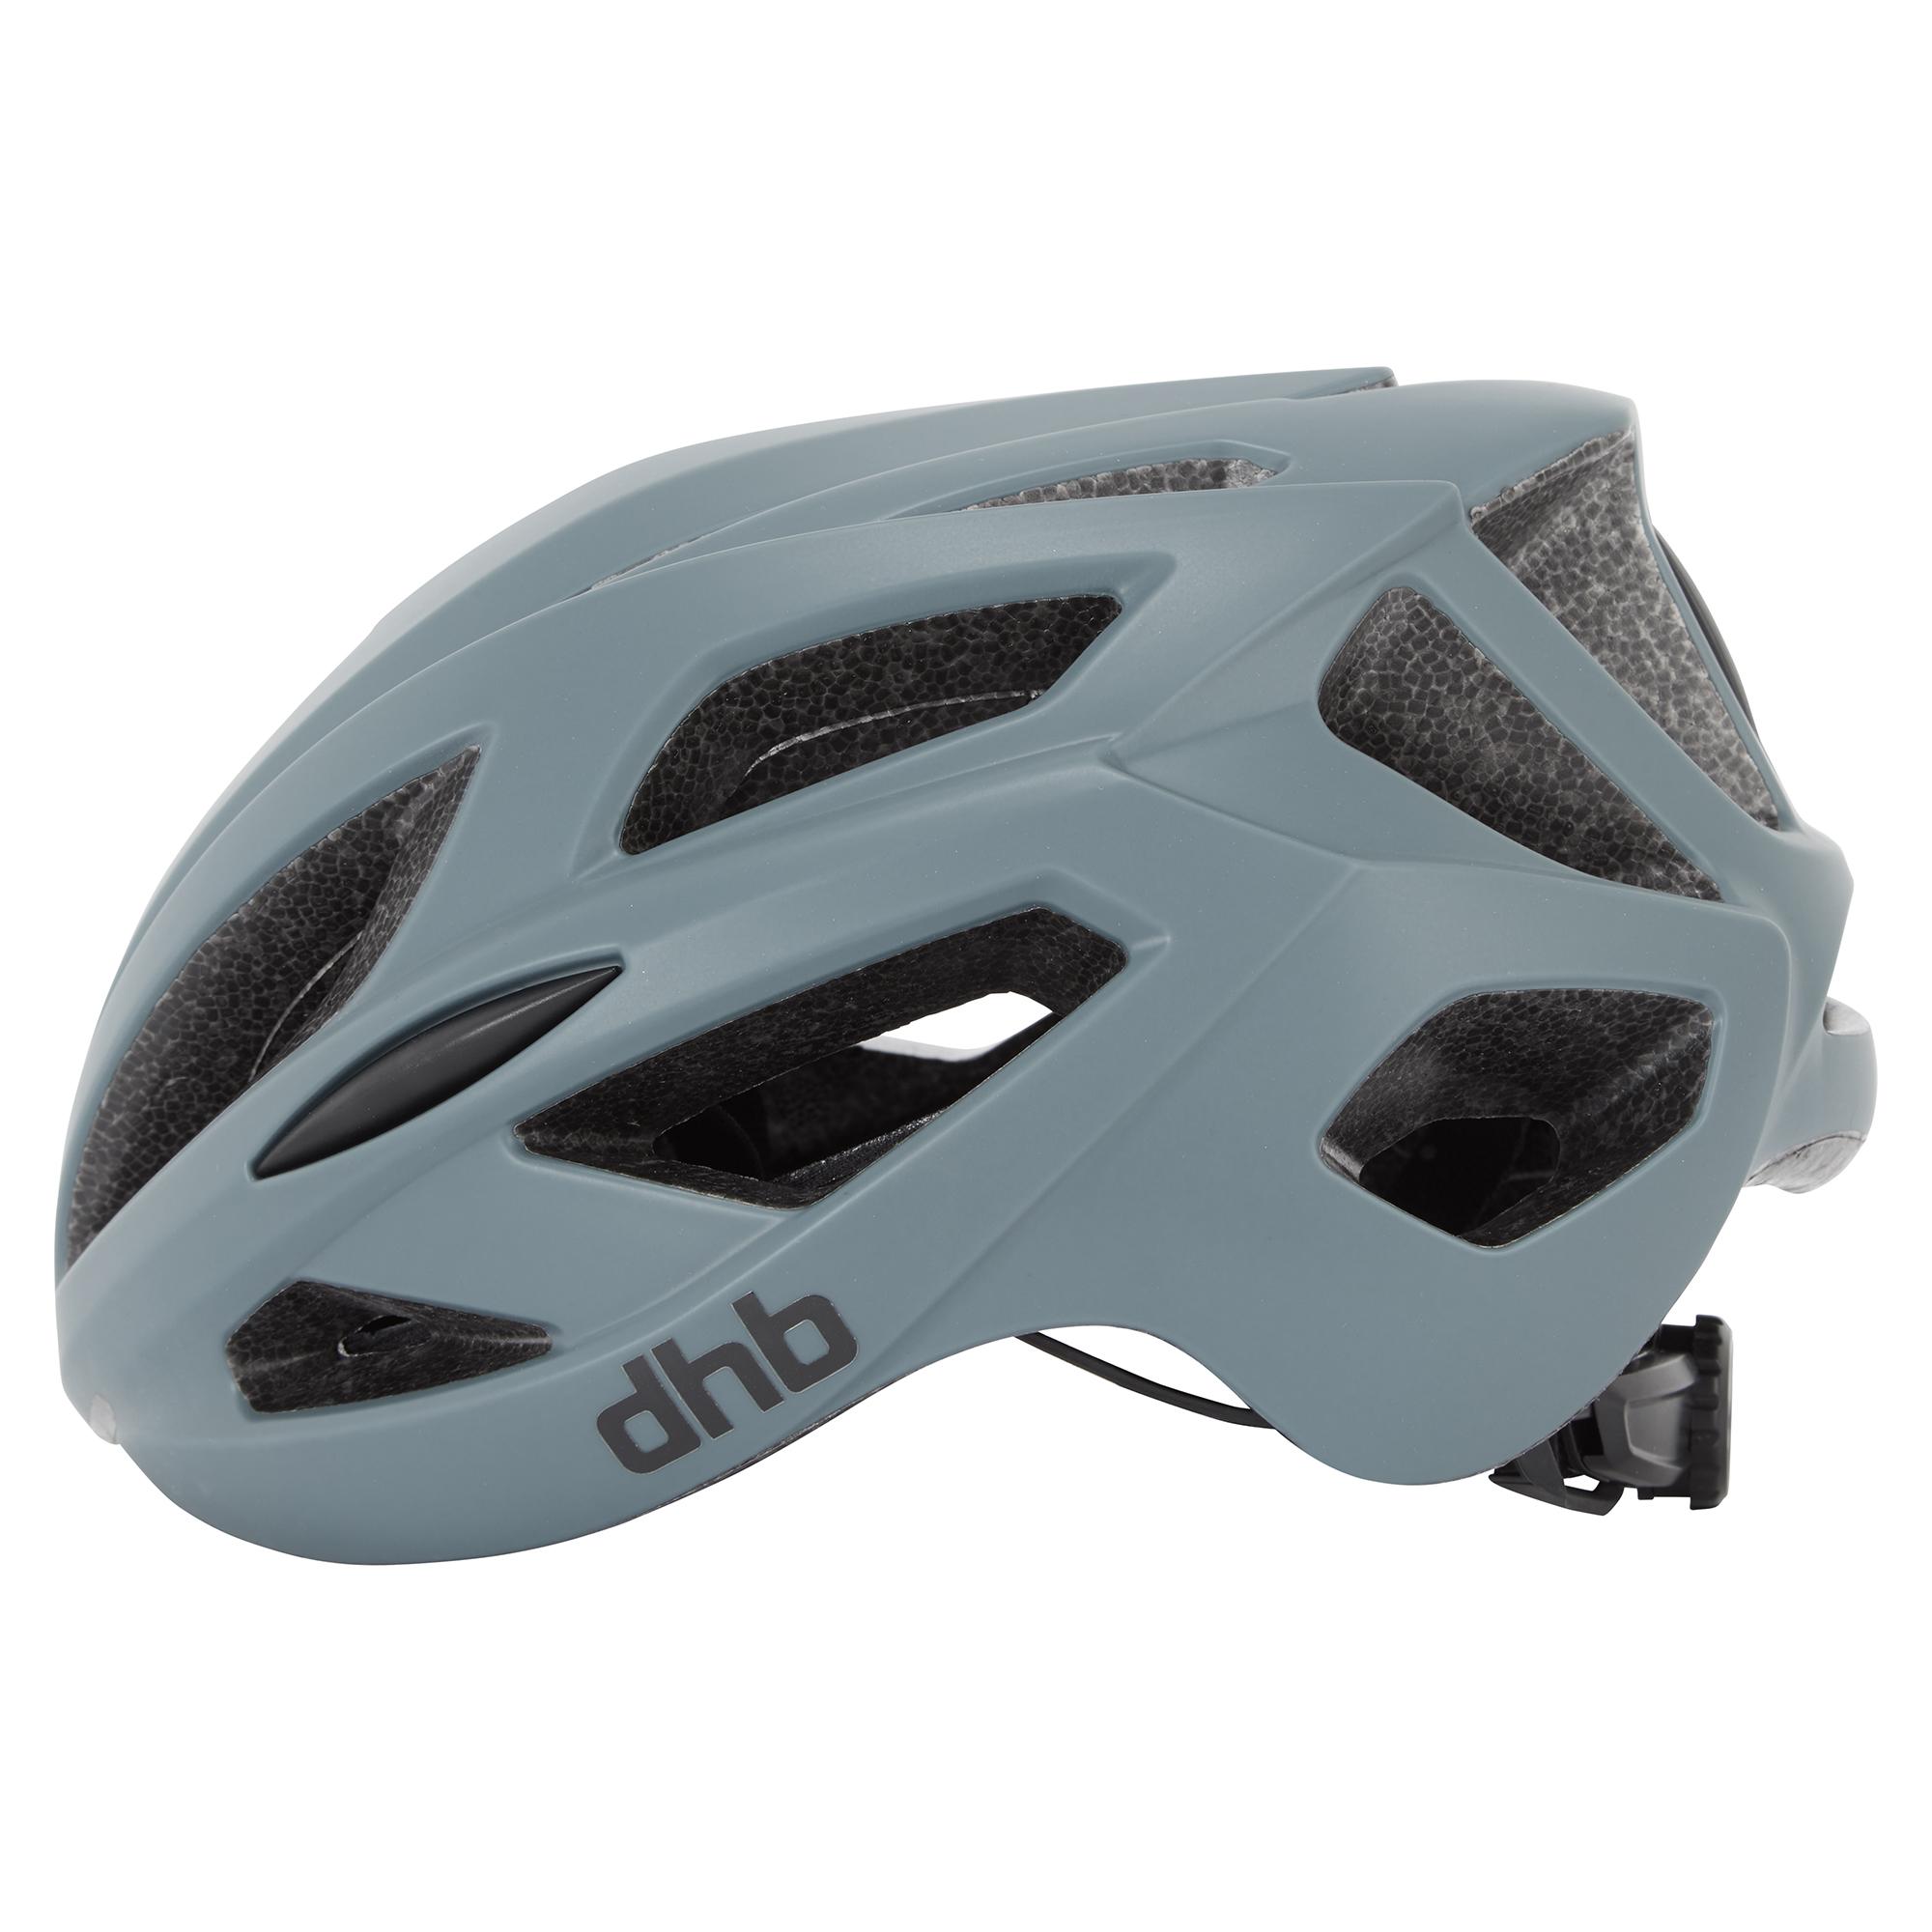 Dhb R3.0 Road Helmet - Grey